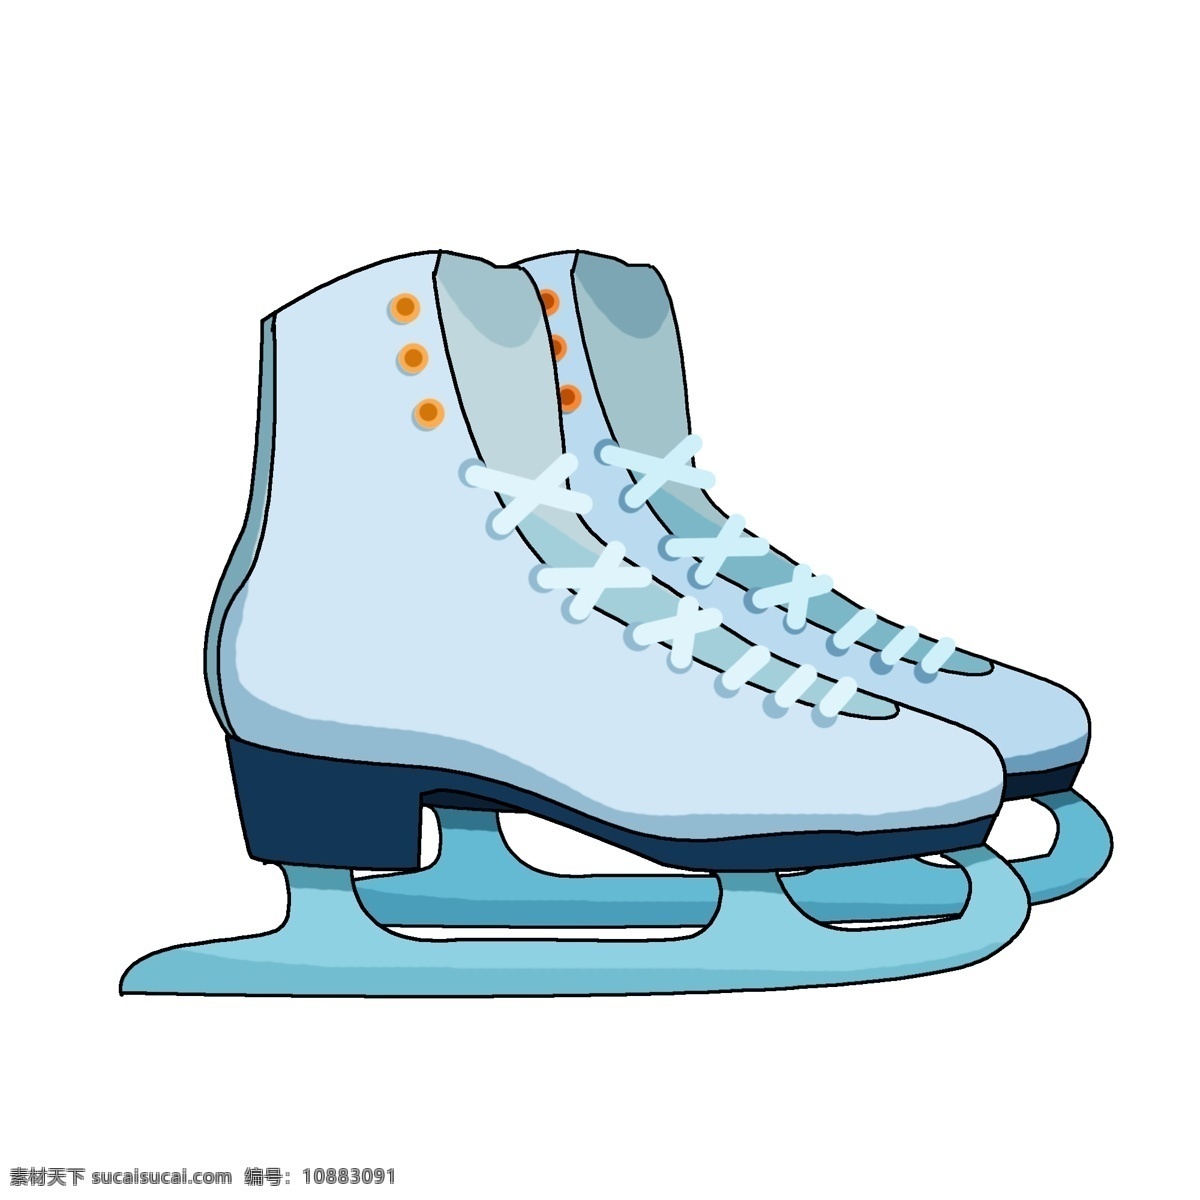 冬季 户外运动 装备 用具 溜冰鞋 冰刀 冬季运动 滑冰 溜冰用具 东北 冰雪大世界 冬季户外游戏 滑雪帽 滑冰装备 花样滑冰